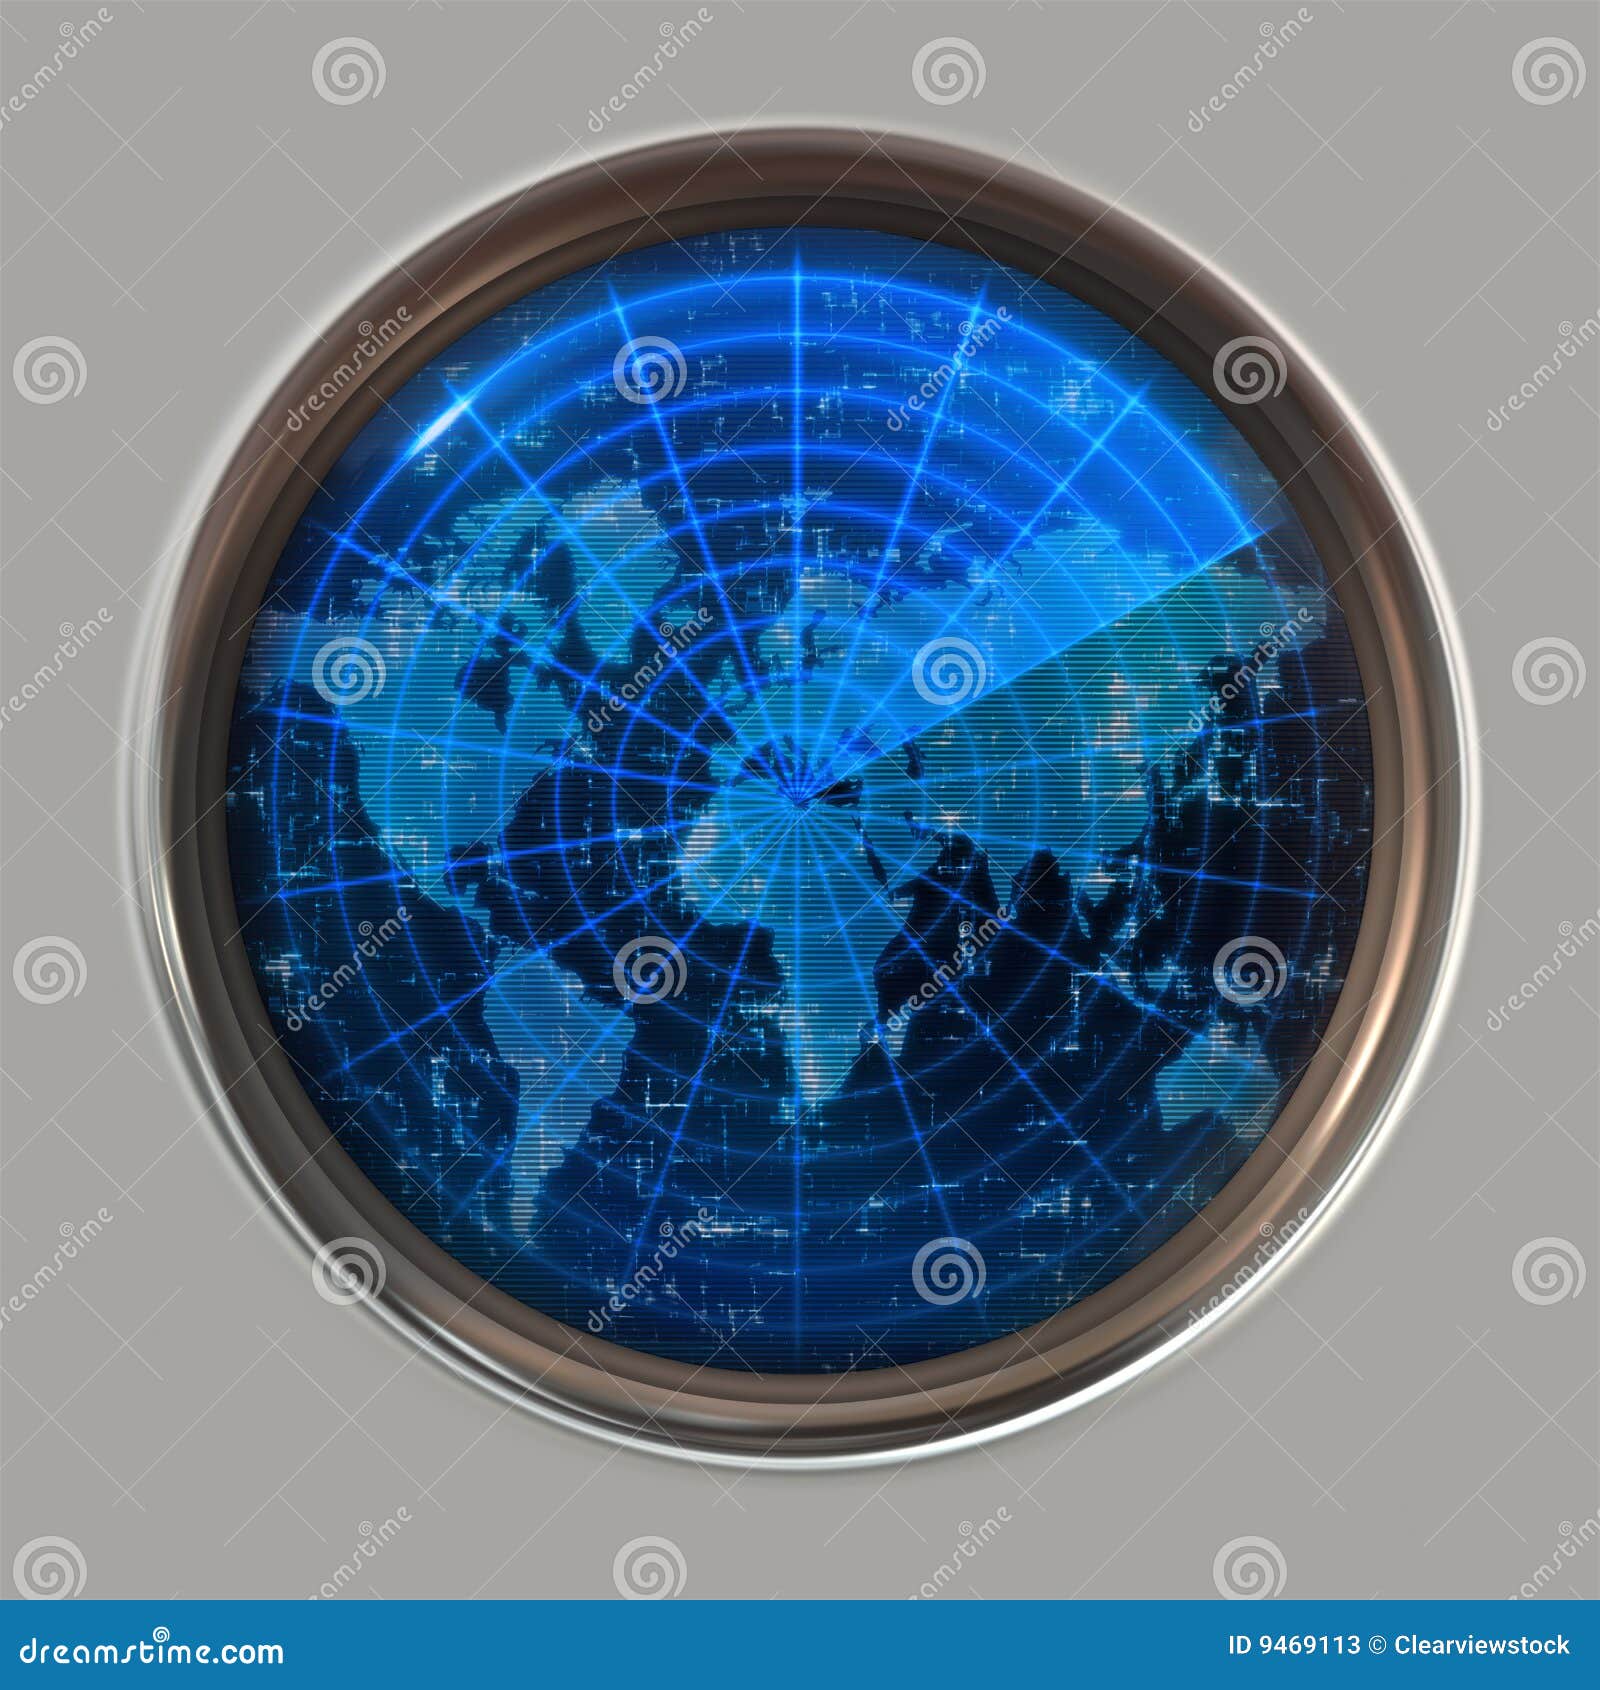 world map radar or sonar